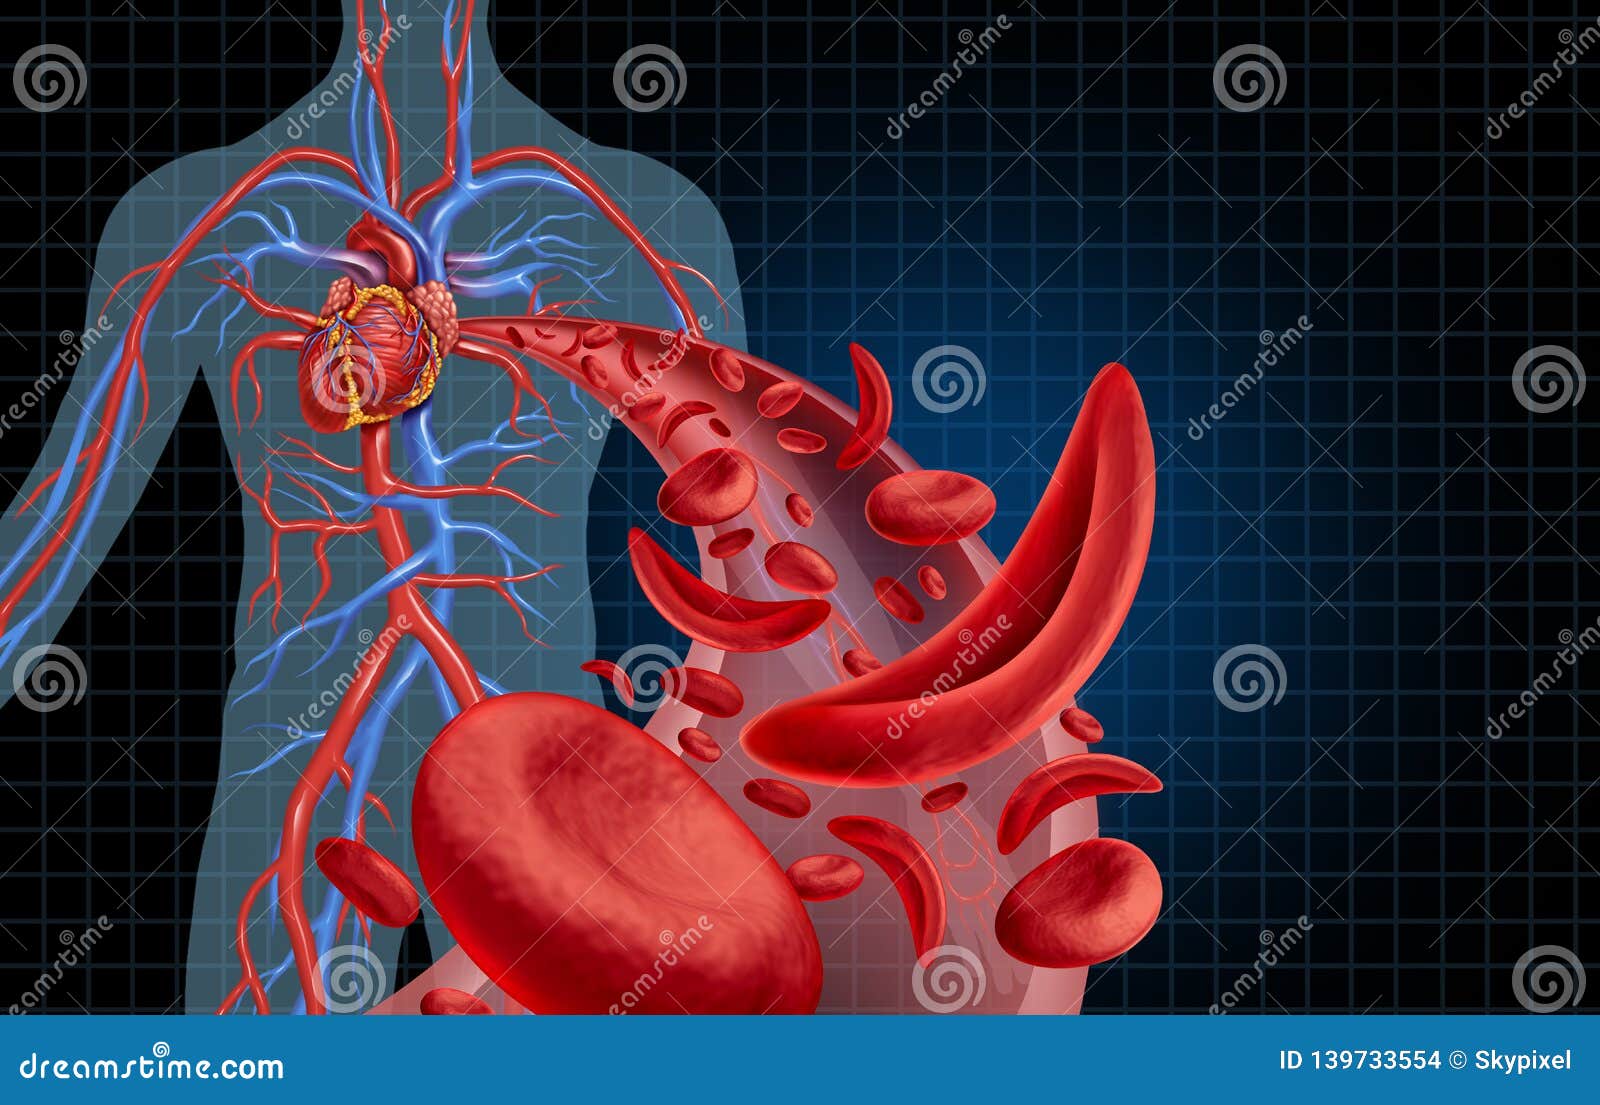 sickle cell cardiovascular